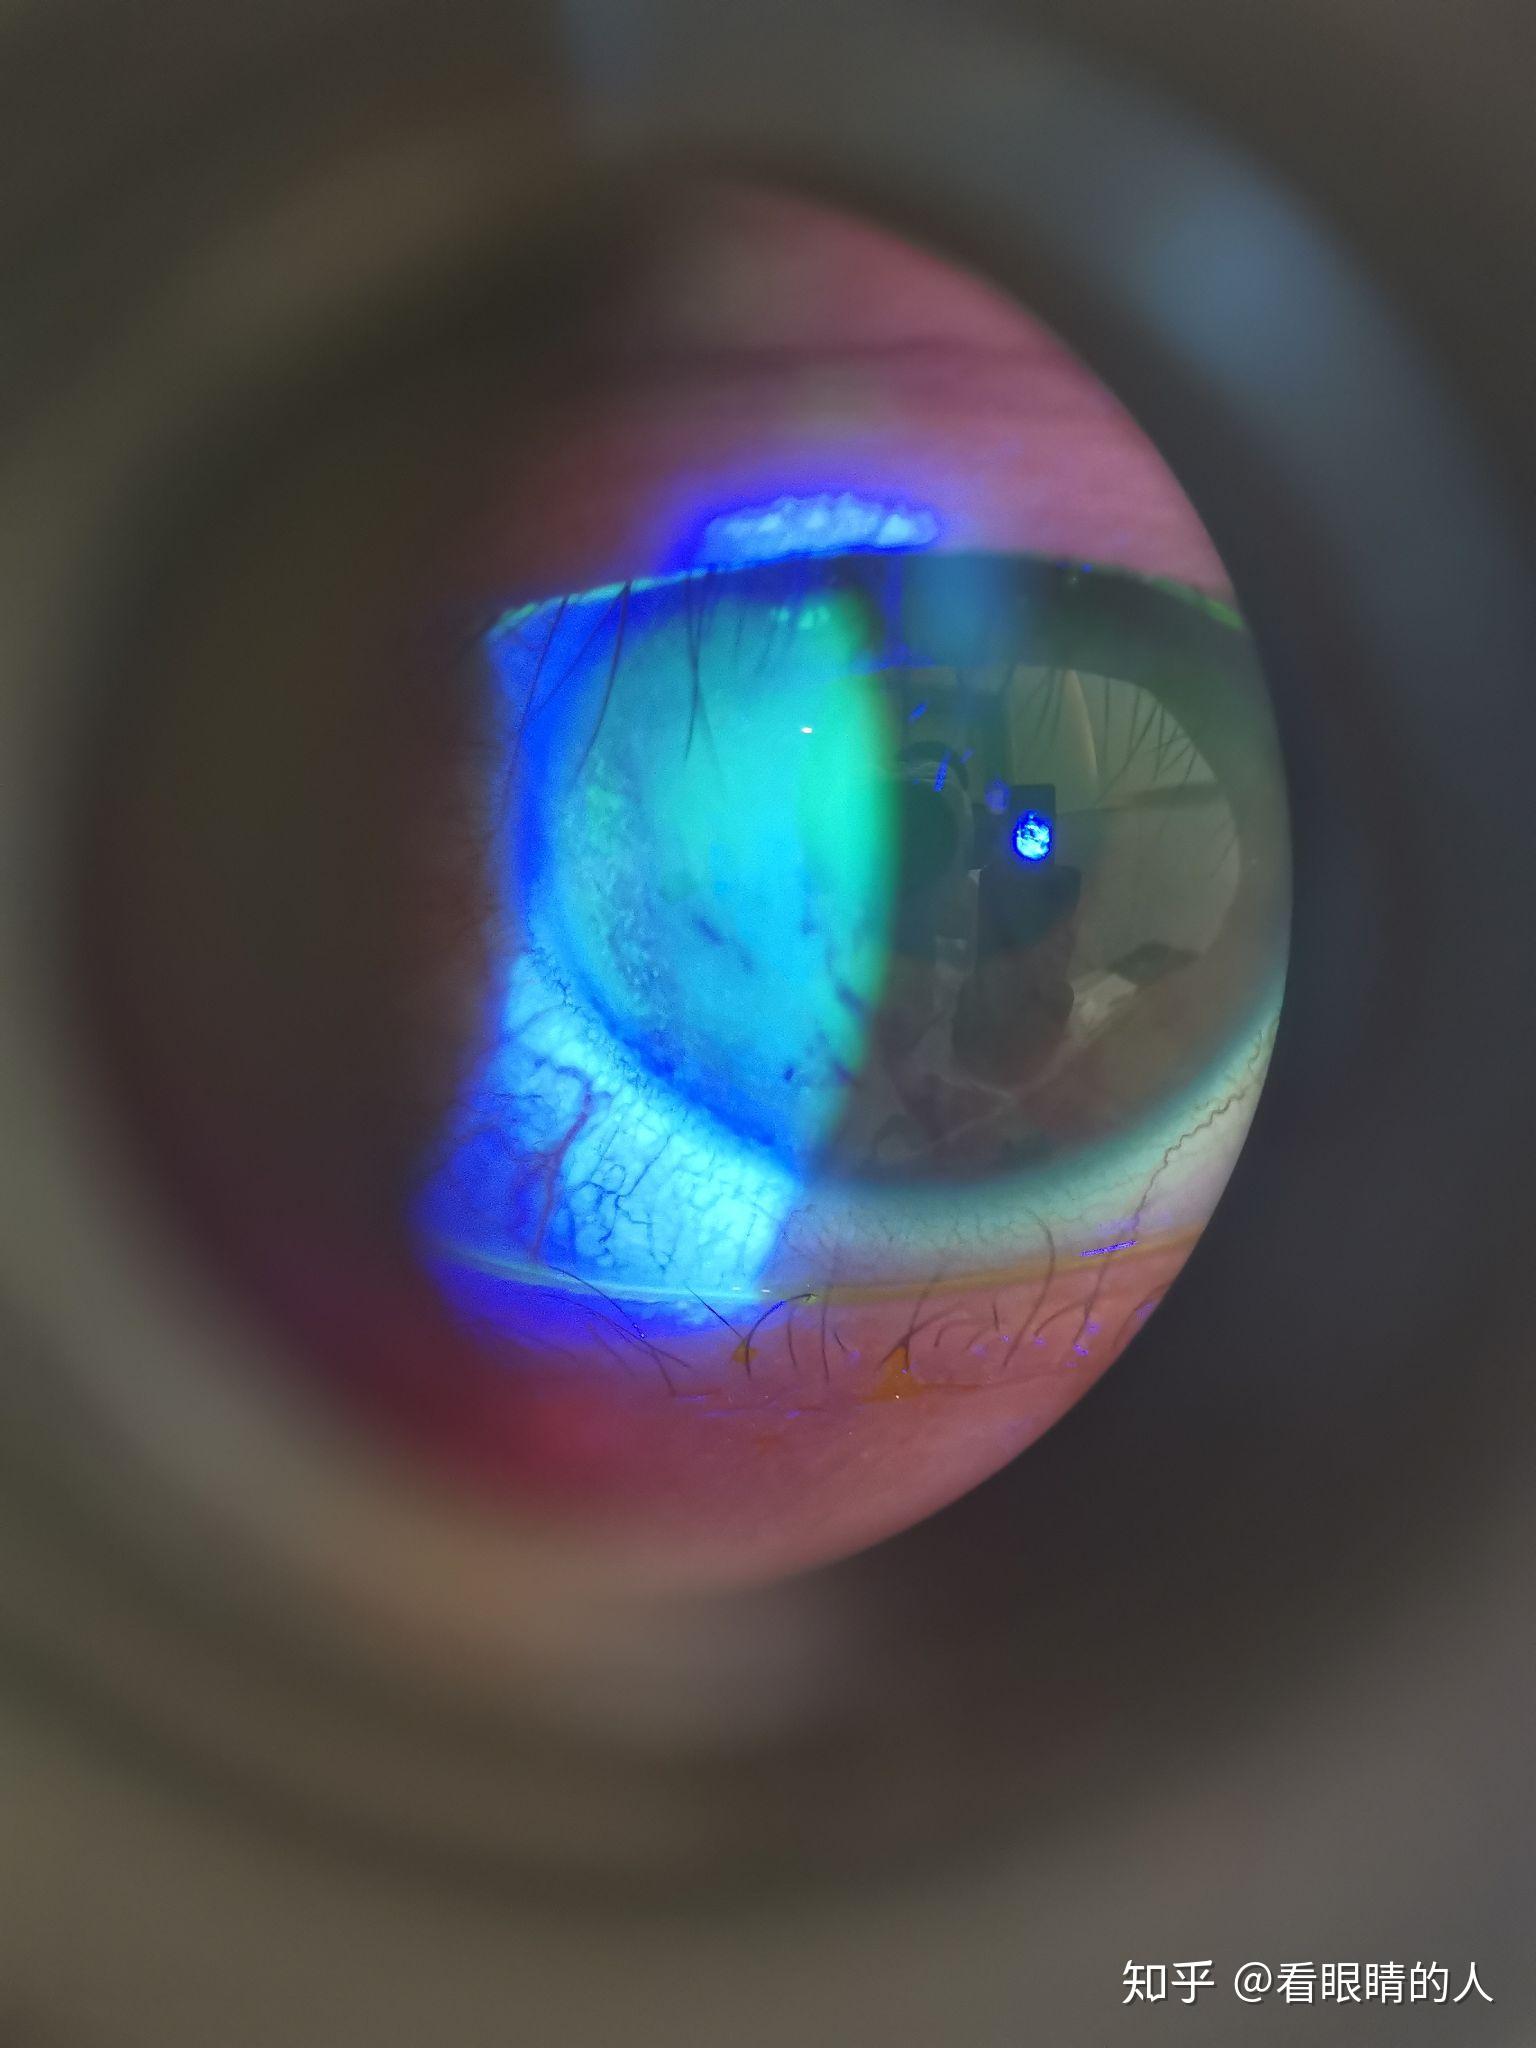 这是我用手拿着手机对着裂隙灯目镜拍下的各种眼部病变的照